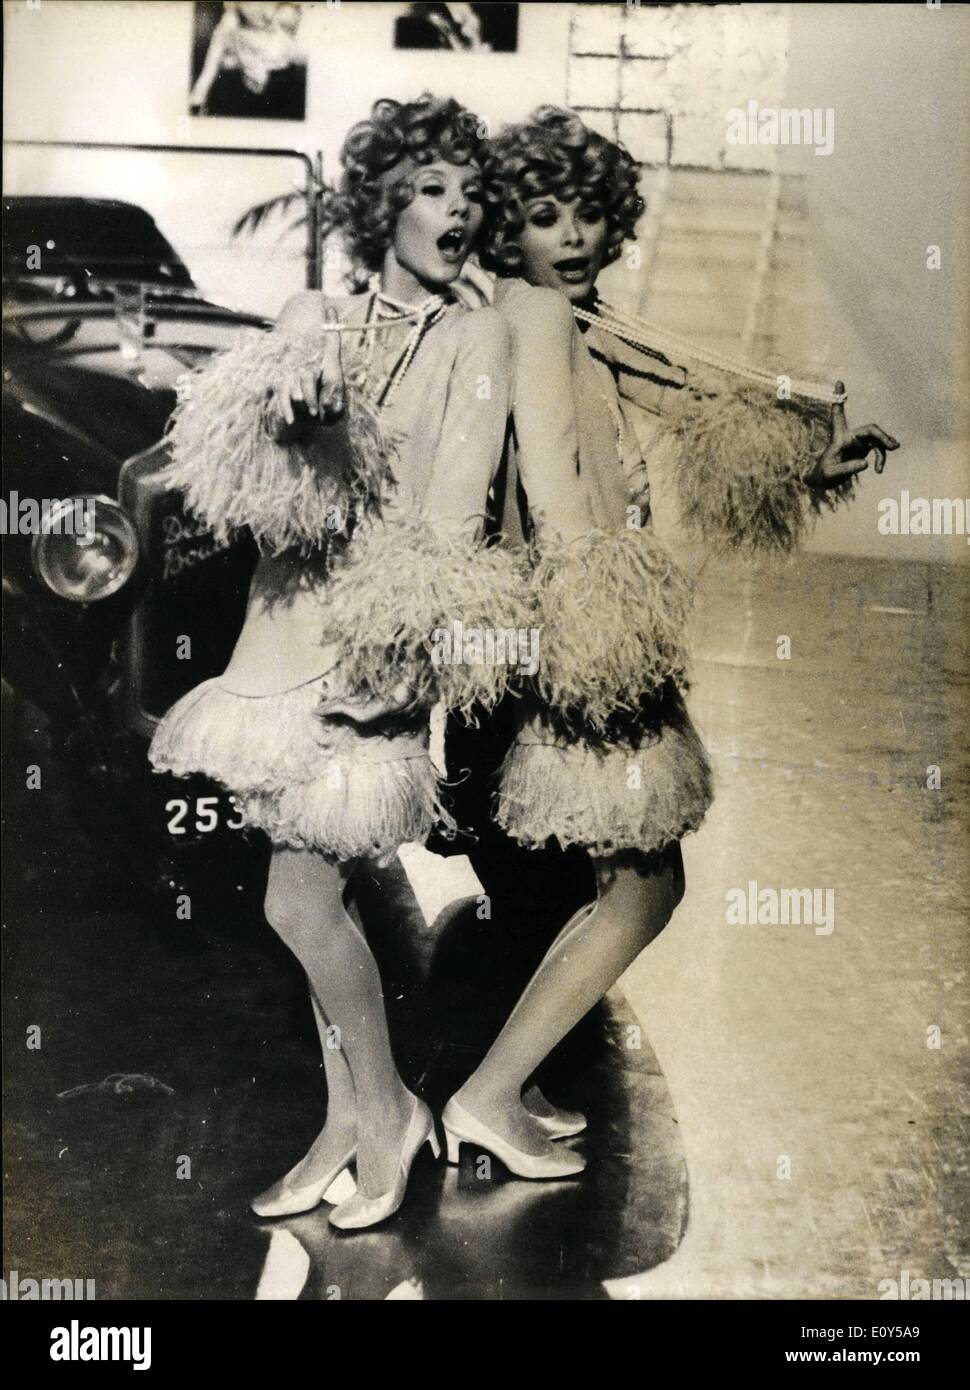 11. November 1968 - MIREILLE DARC, CO-STAR mit SYLVIE IN '' SYLVIE VARTAN SHOW'': zum ersten Mal Mireille Darc, der berühmte Bildschirm Schauspielerin wird Co-star mit Sylvie Vartan, Johnny Hallyday Frau Sylvie Vartan TV Show. OPS: Mireille Darc (links) und Sylvie Vartan tragen Kleider erinnert an den frühen dreißiger Jahren Vielfalt zeigt während einer Probe gestern abgebildet. Stockfoto